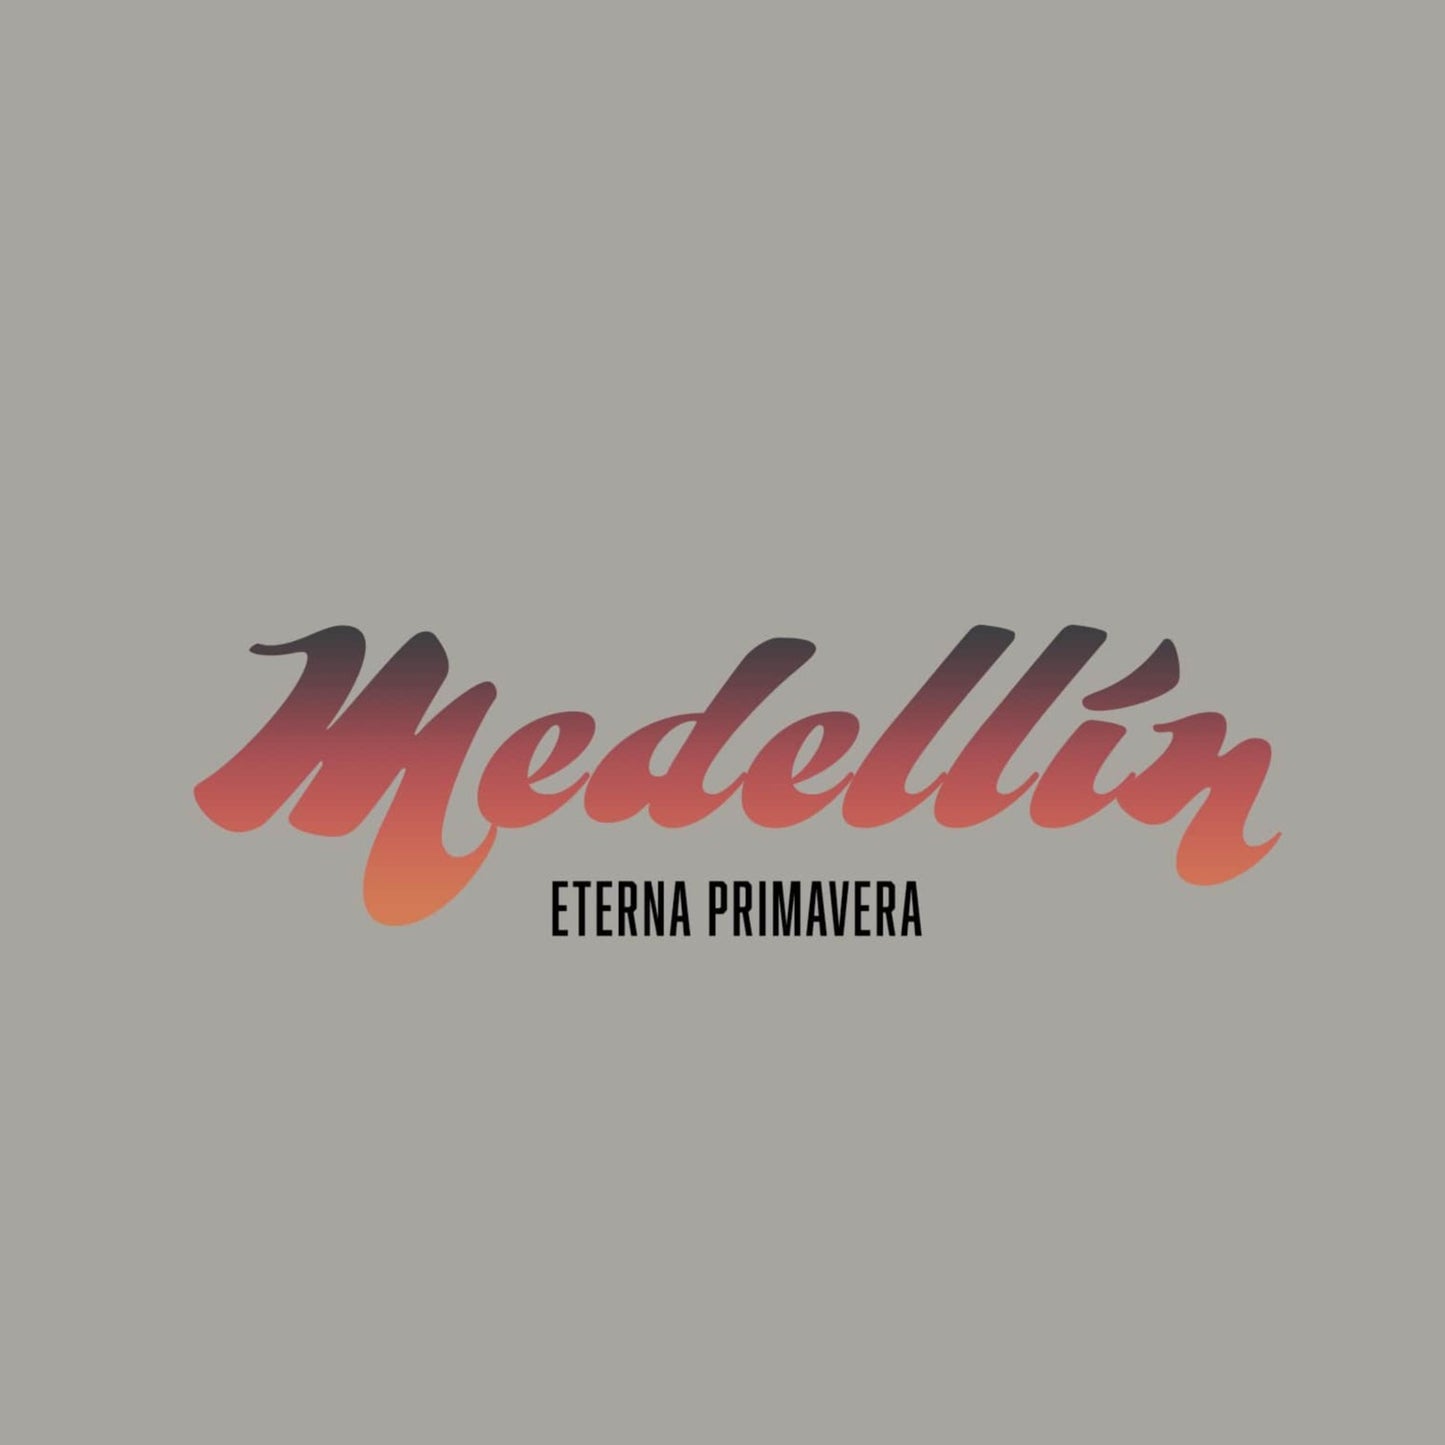 🇨🇴 Medellin Enter Primavera Sweatshirt